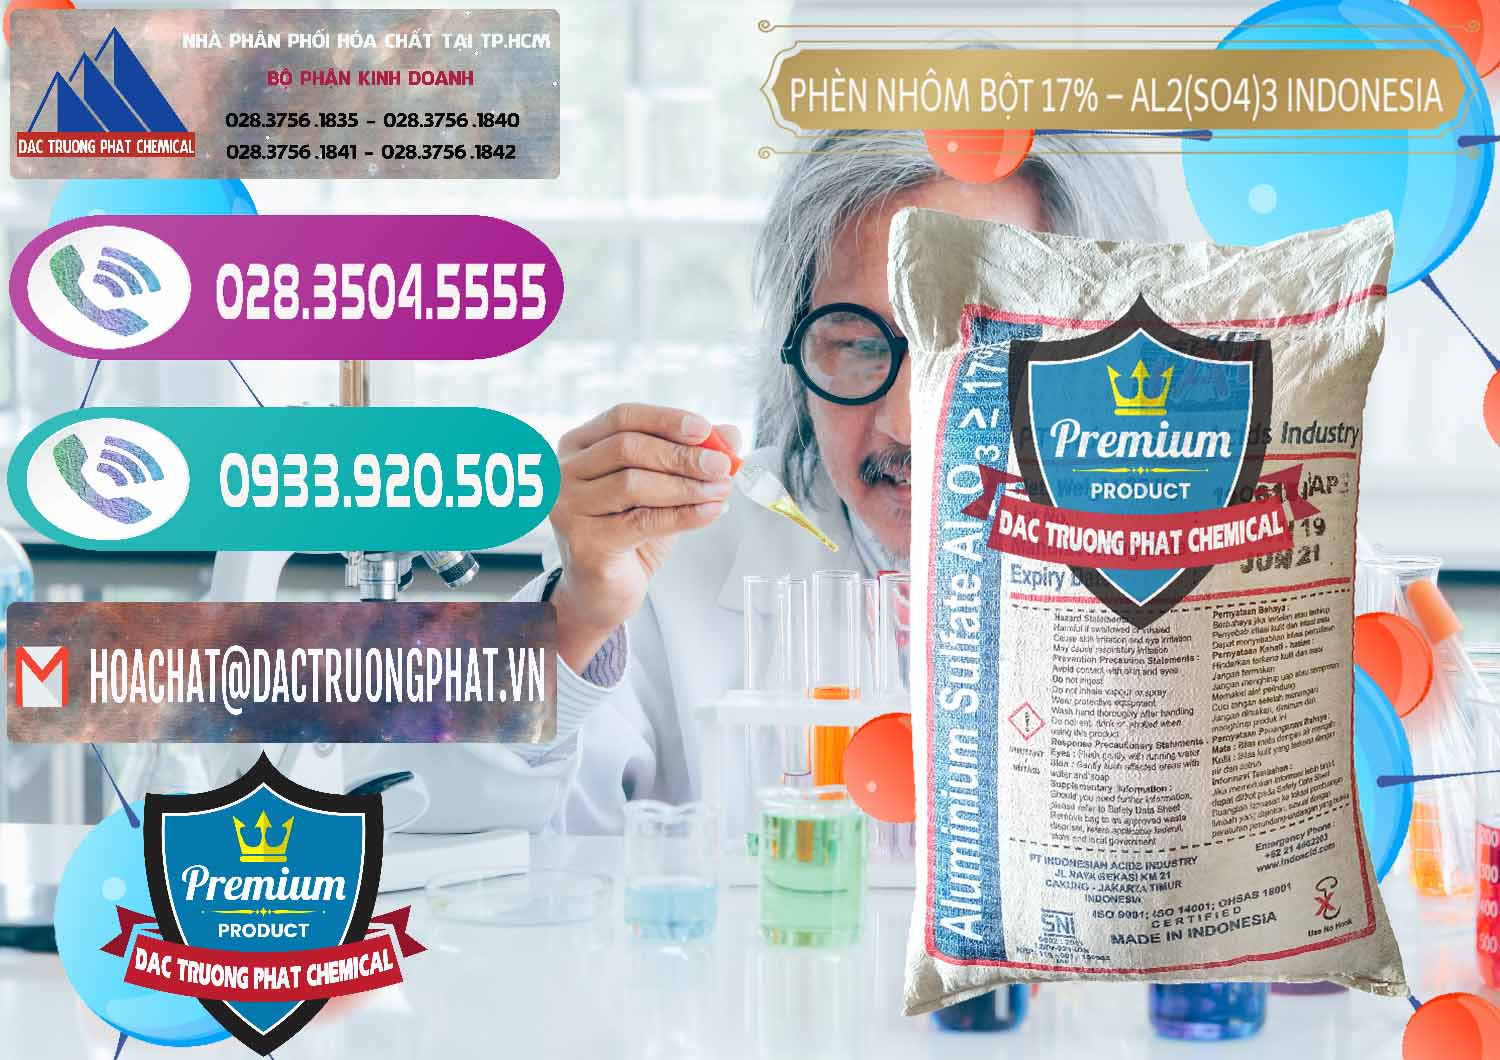 Nơi nhập khẩu ( bán ) Phèn Nhôm Bột - Al2(SO4)3 17% bao 25kg Indonesia - 0114 - Công ty chuyên cung cấp ( kinh doanh ) hóa chất tại TP.HCM - hoachatxulynuoc.com